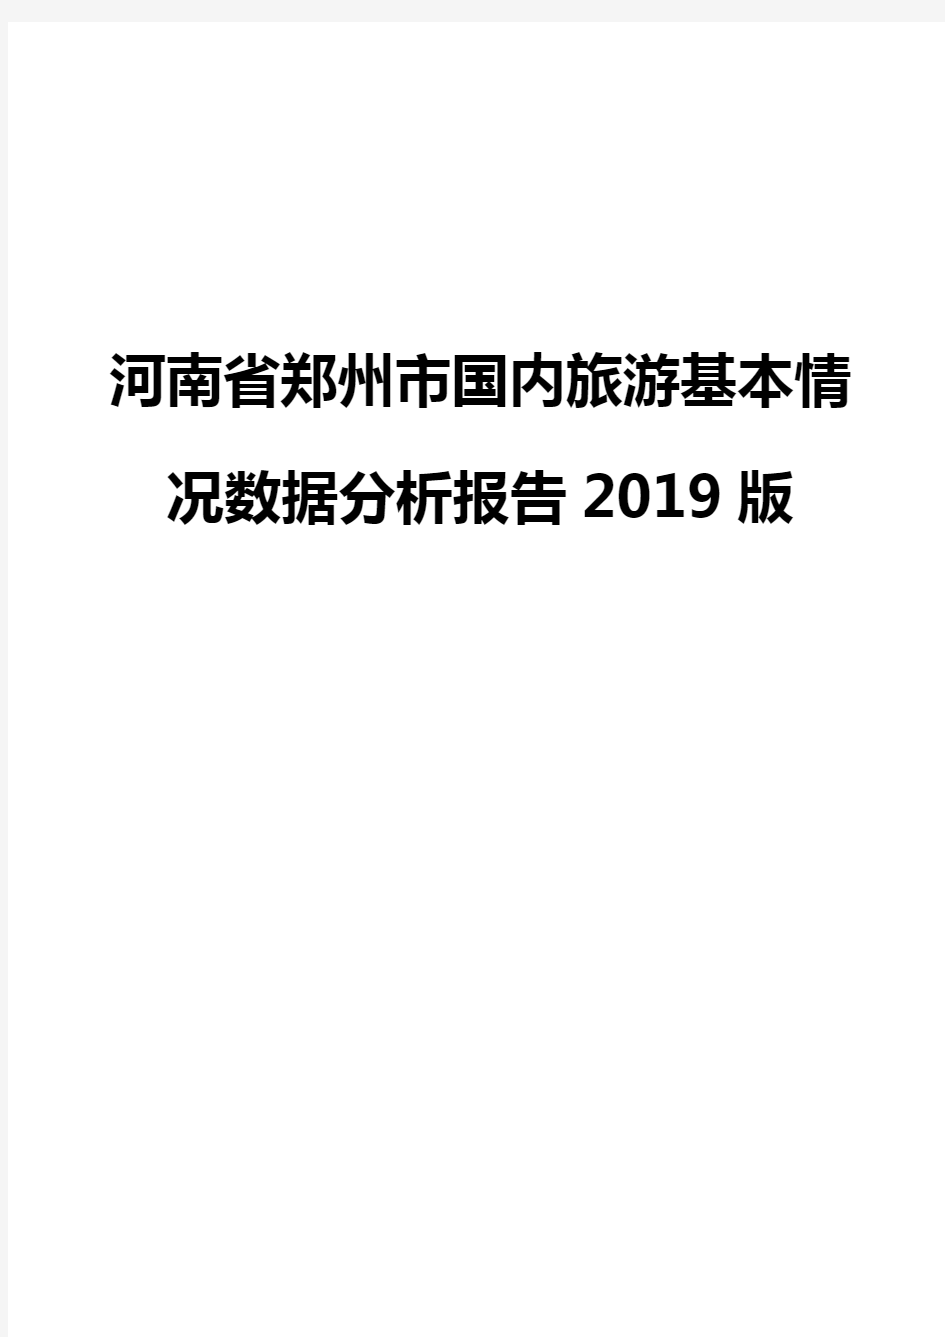 河南省郑州市国内旅游基本情况数据分析报告2019版